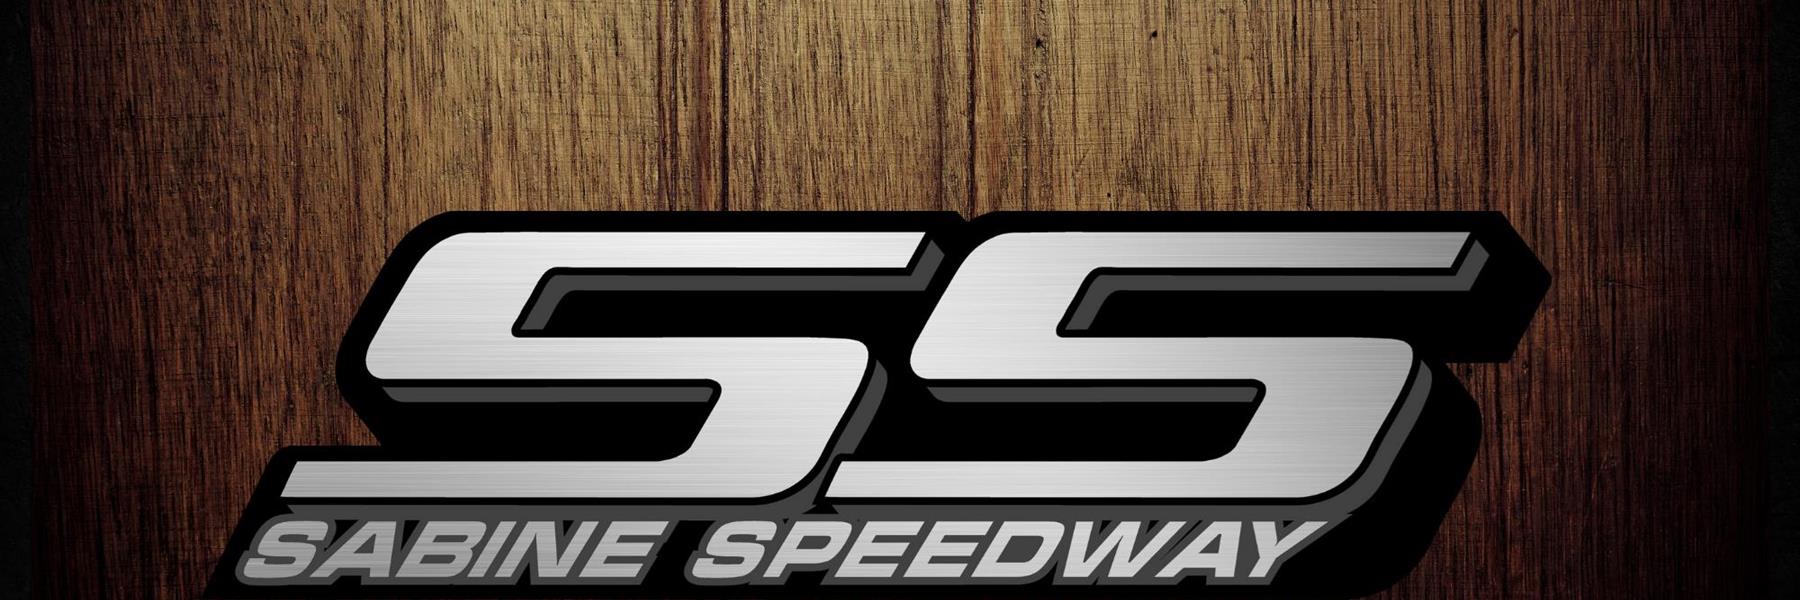 9/9/2022 - Sabine Speedway